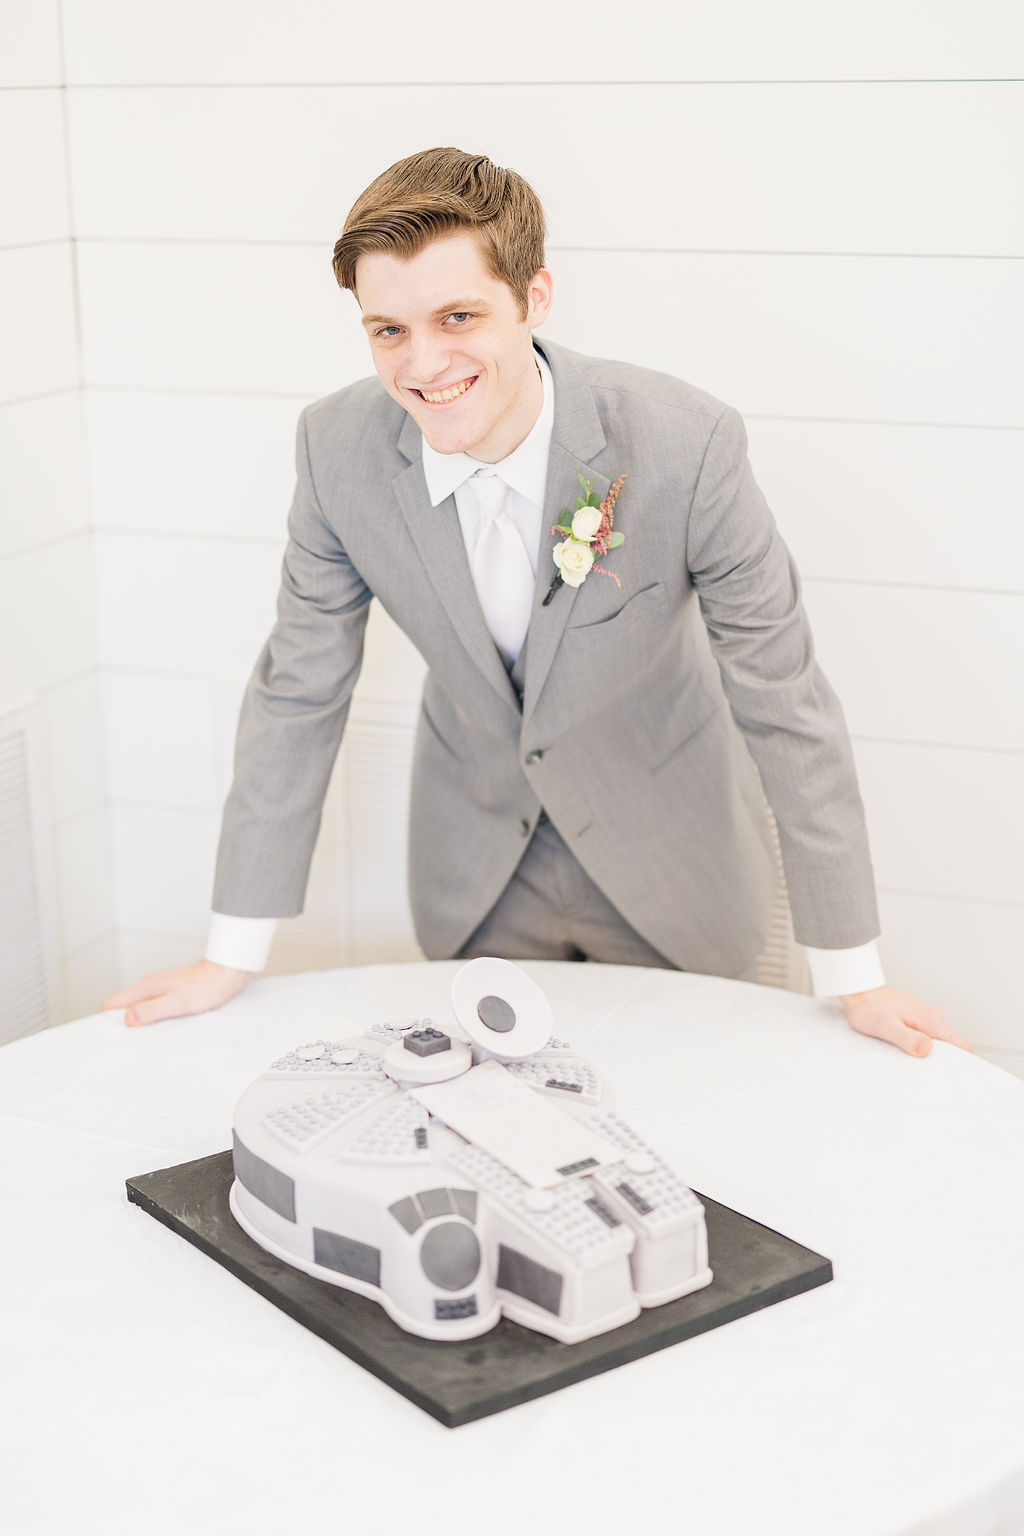 unique groom's cake